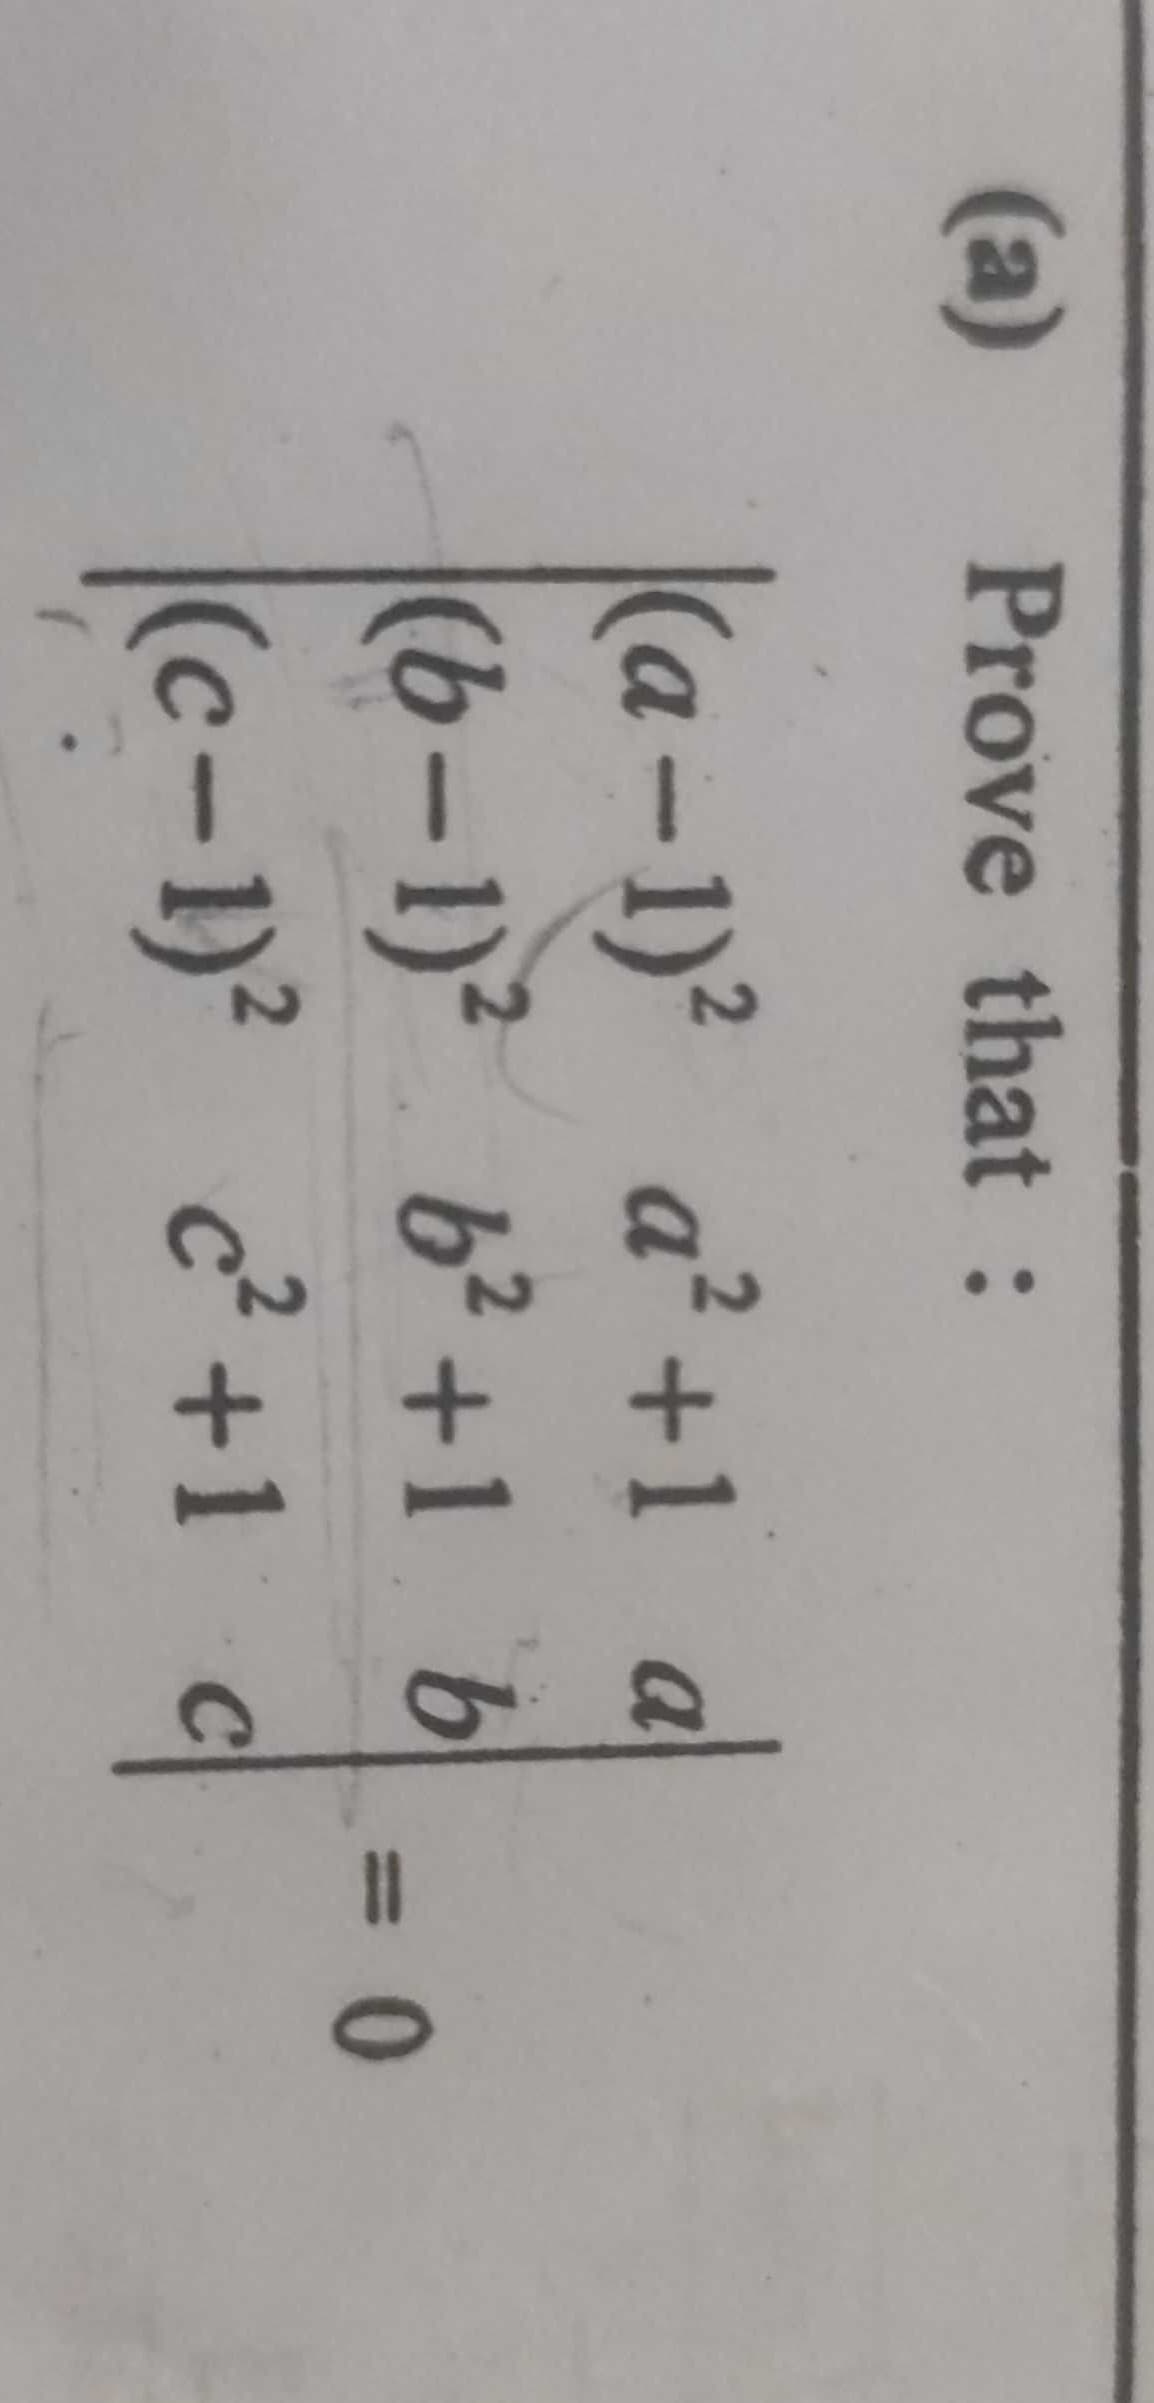 (a)
Prove that :
(a-1)² a²+1 a
2
(6-1)² 6² +1 b
(c-1)² c²+1 c
= 0